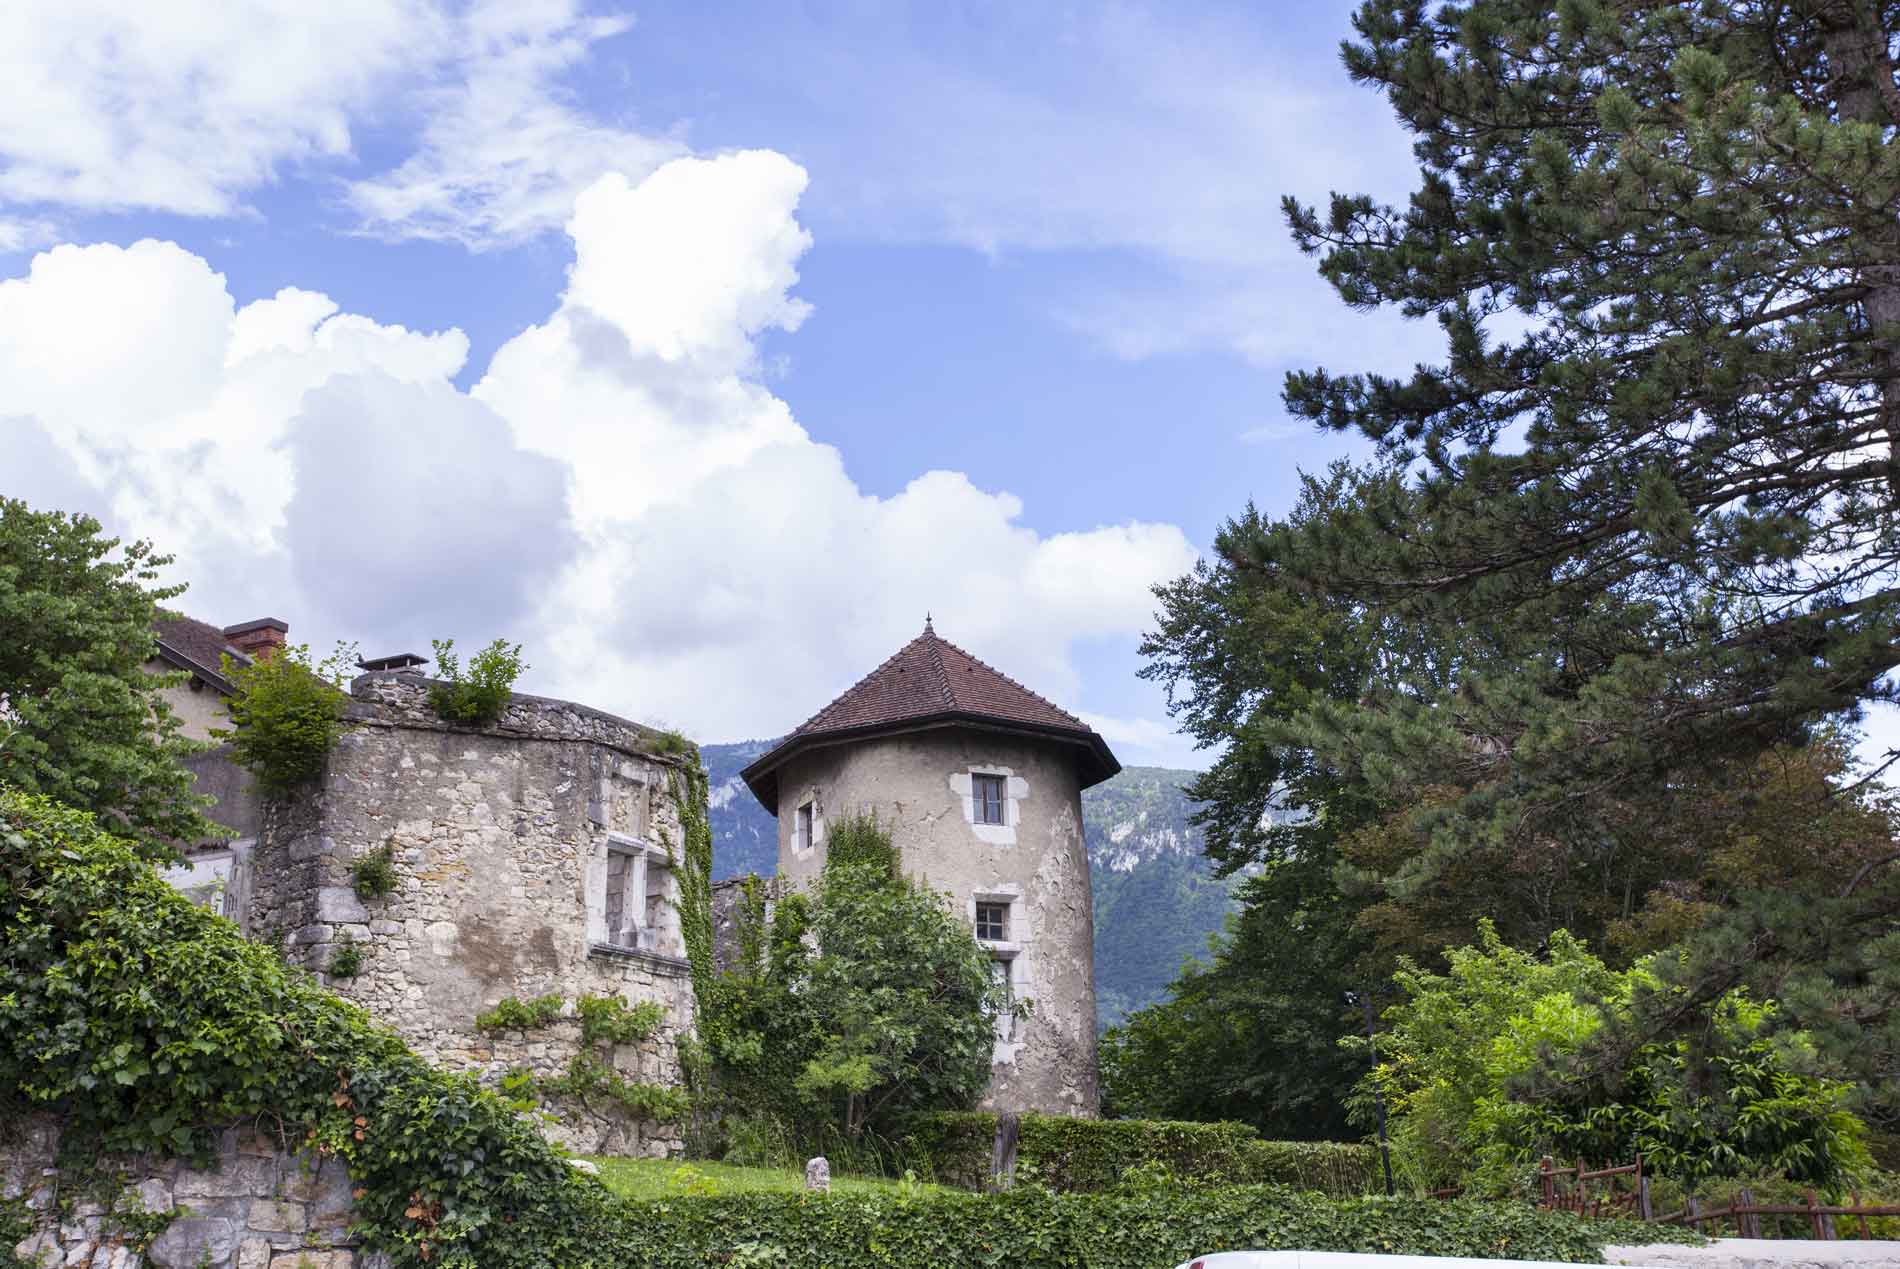 Château de Musinens ©Daniel Gillet